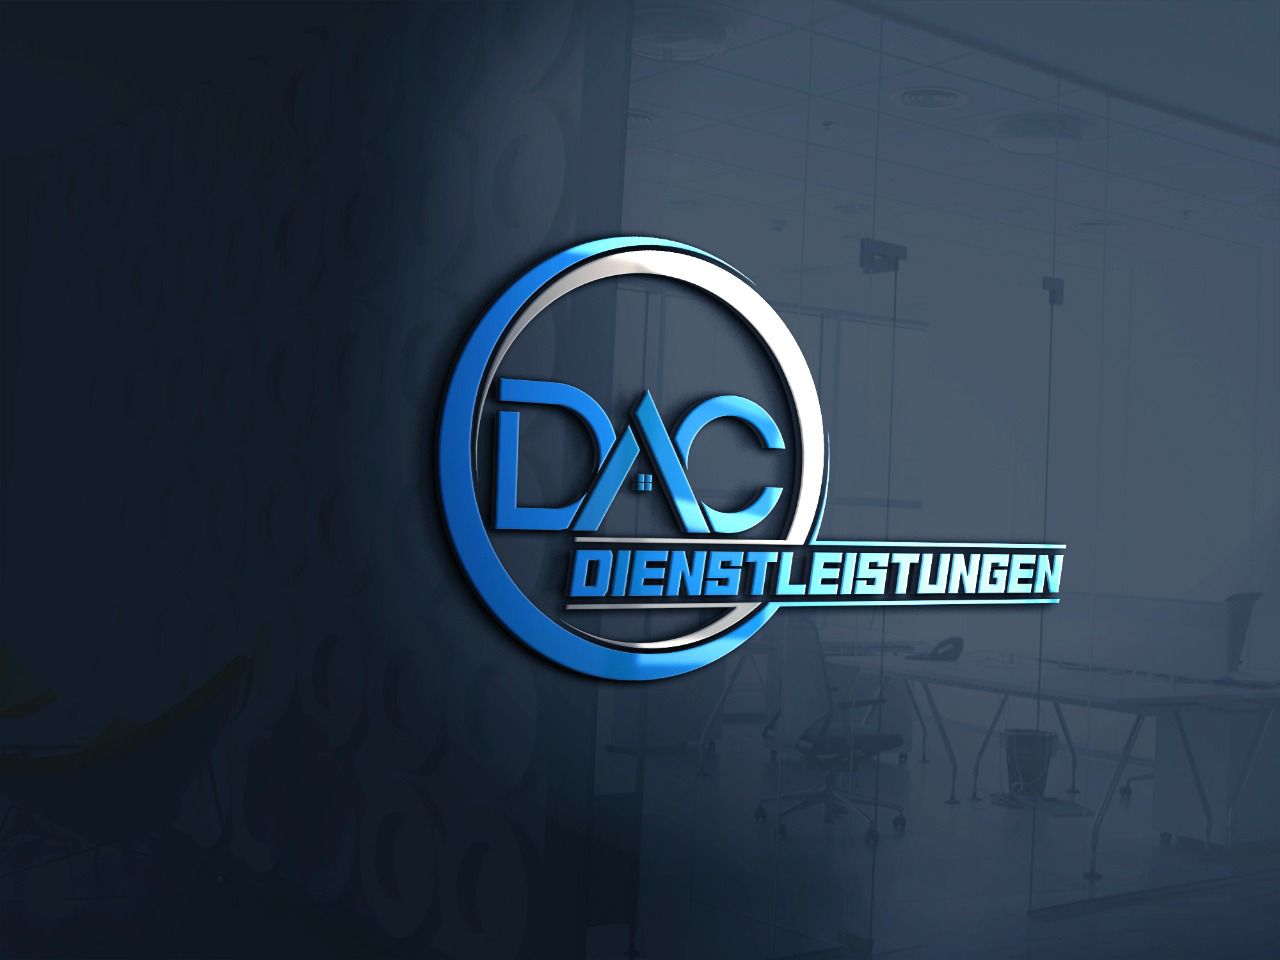 dac-dienstleistungen-ug-logo